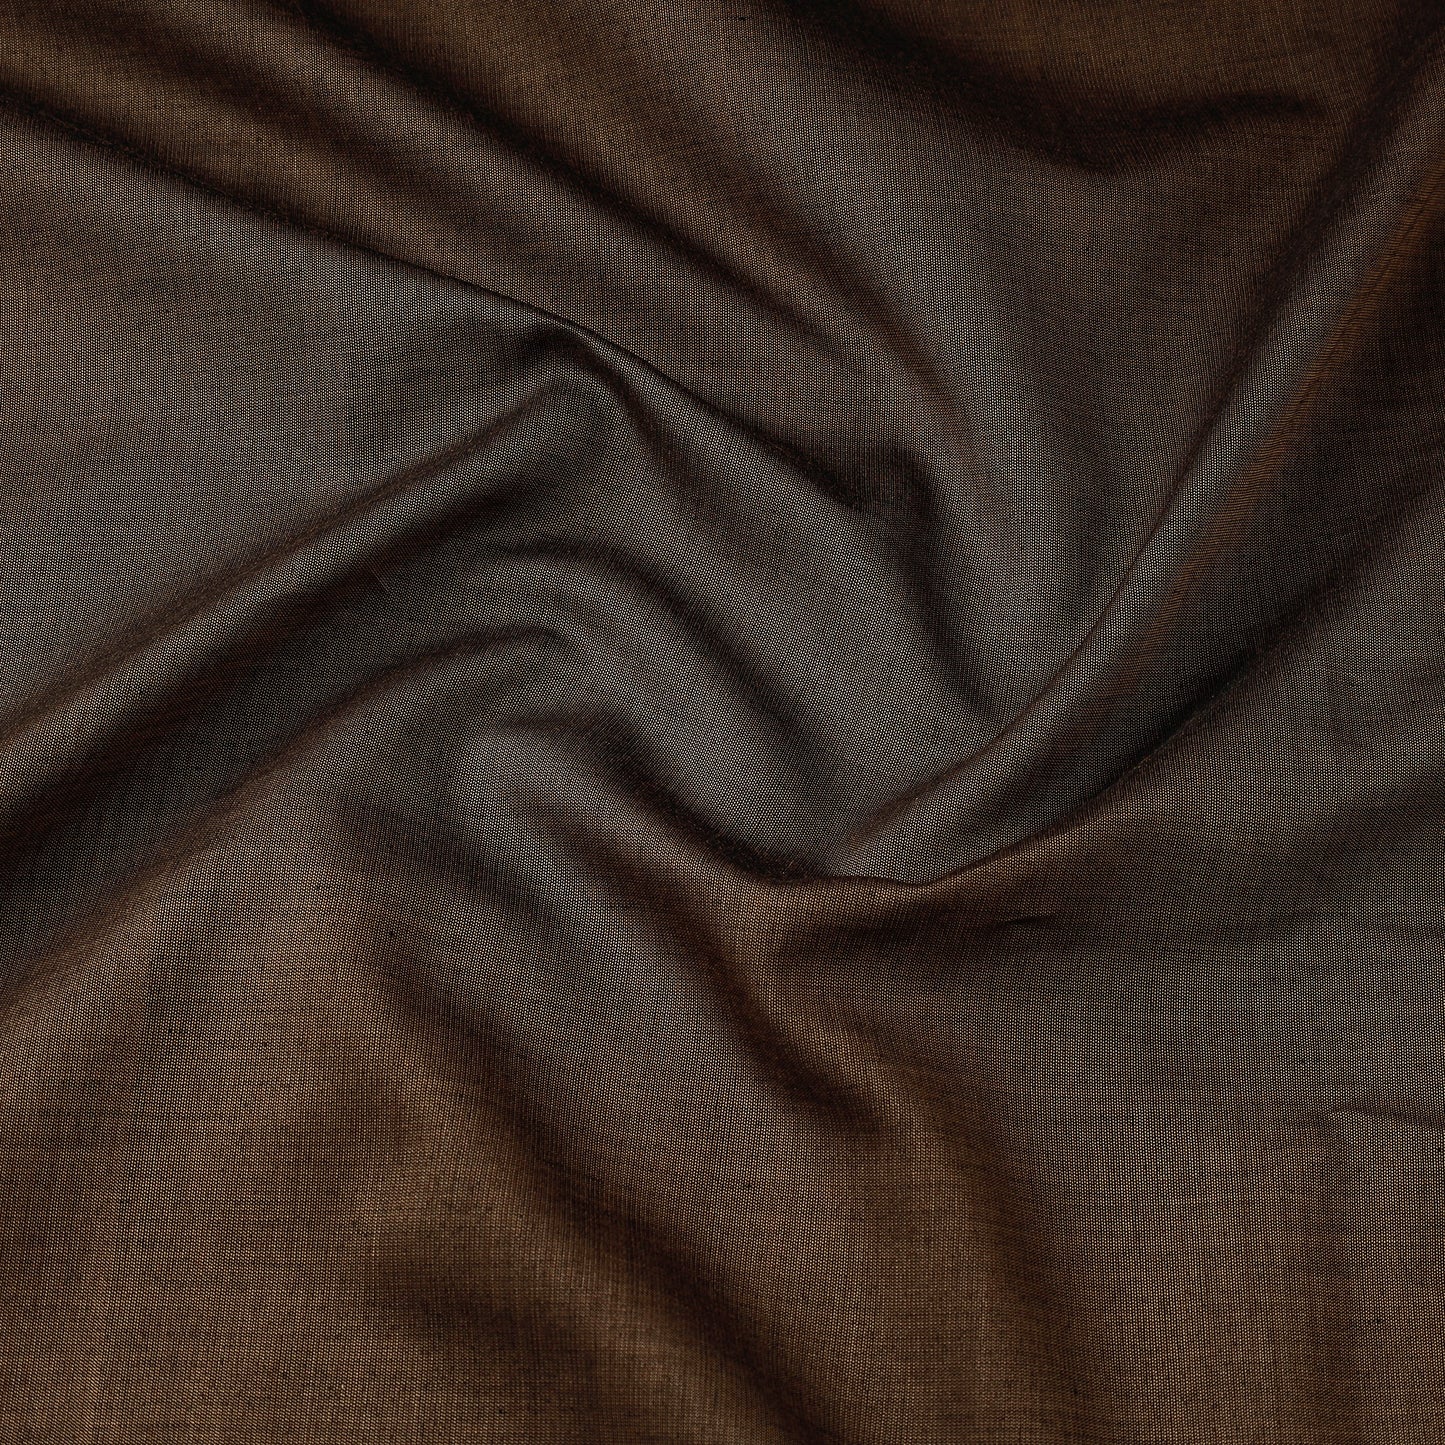 Brown - Maheshwari Cotton Handloom Fabric